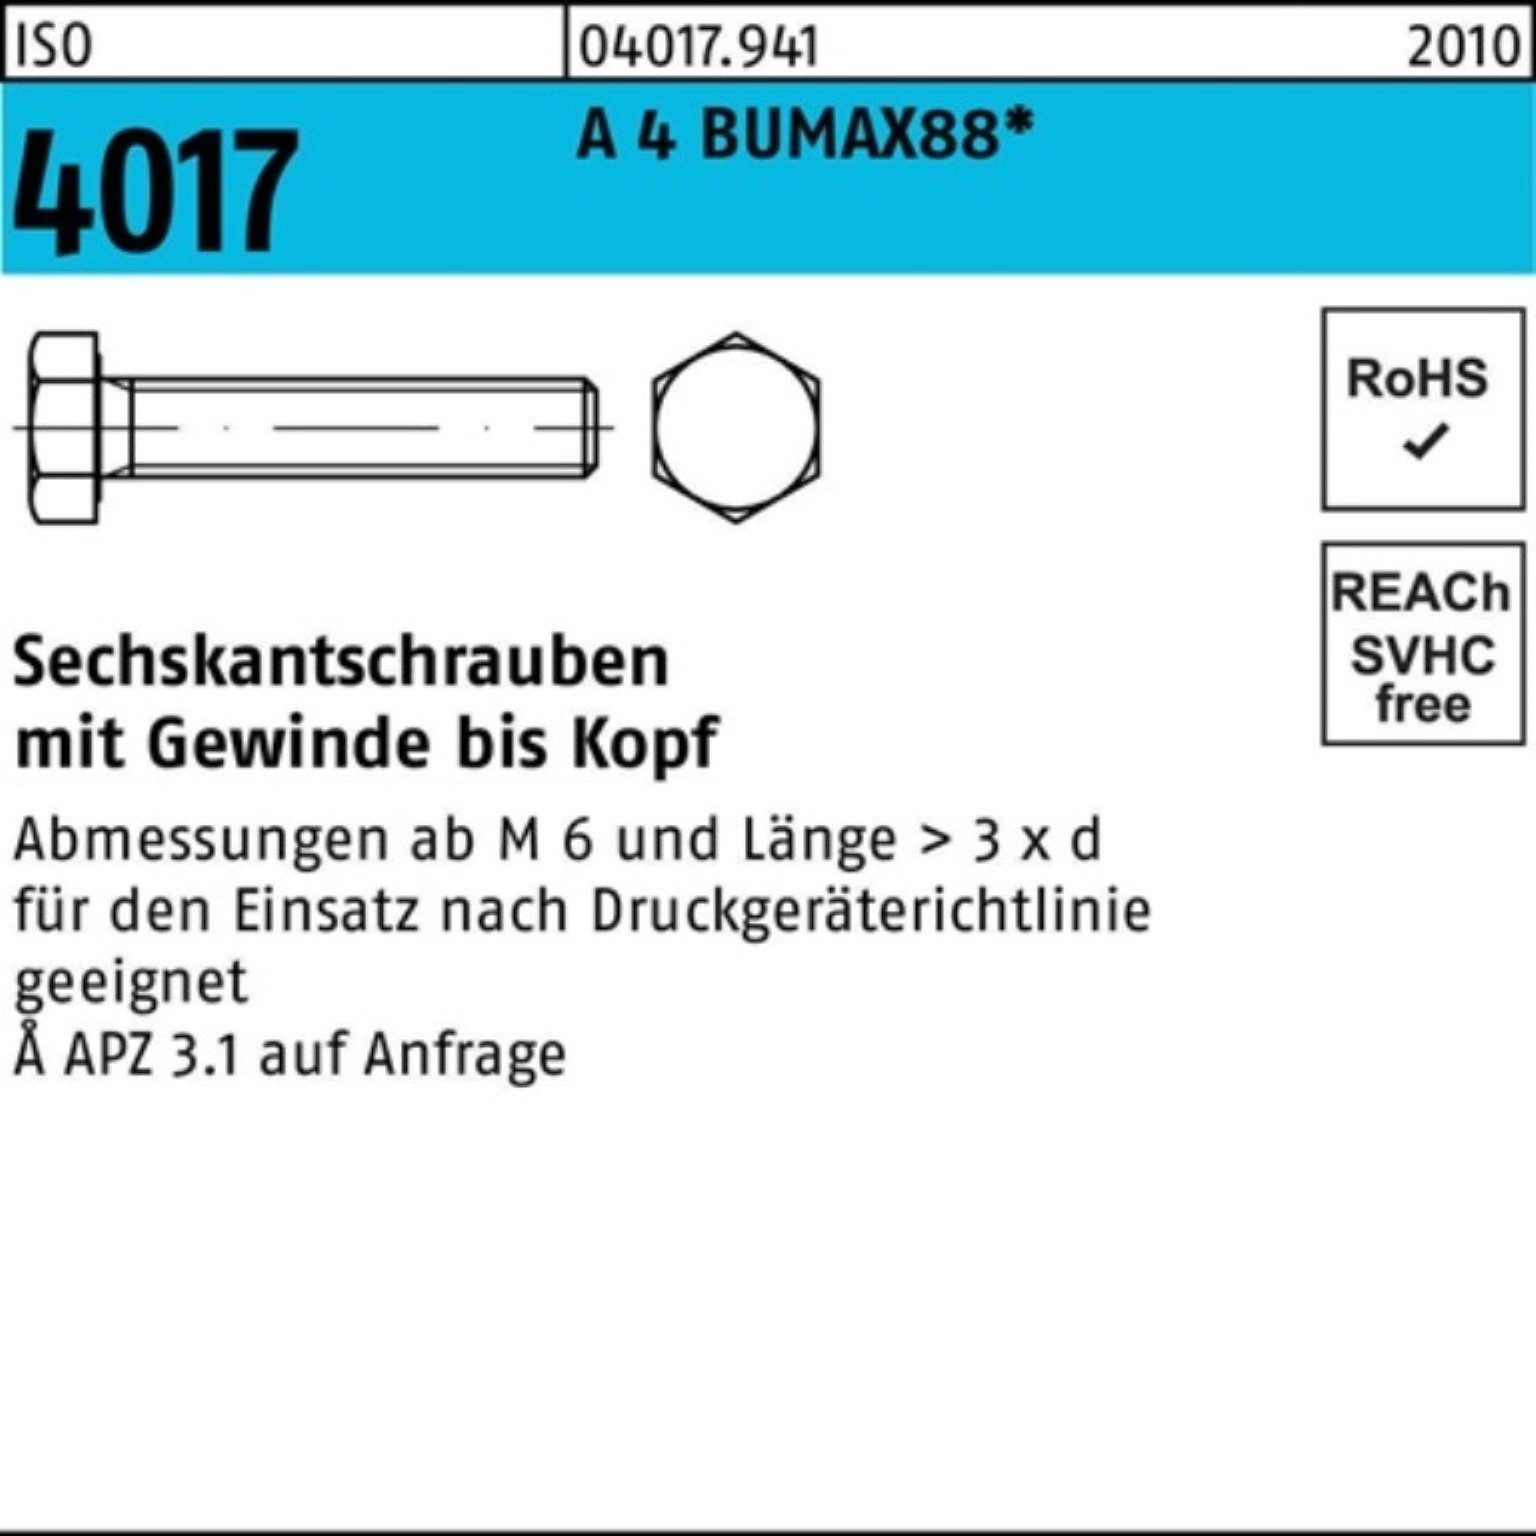 Bufab Sechskantschraube 100er Pack Sechskantschraube ISO 4017 VG M10x 60 A 4 BUMAX88 50 Stück